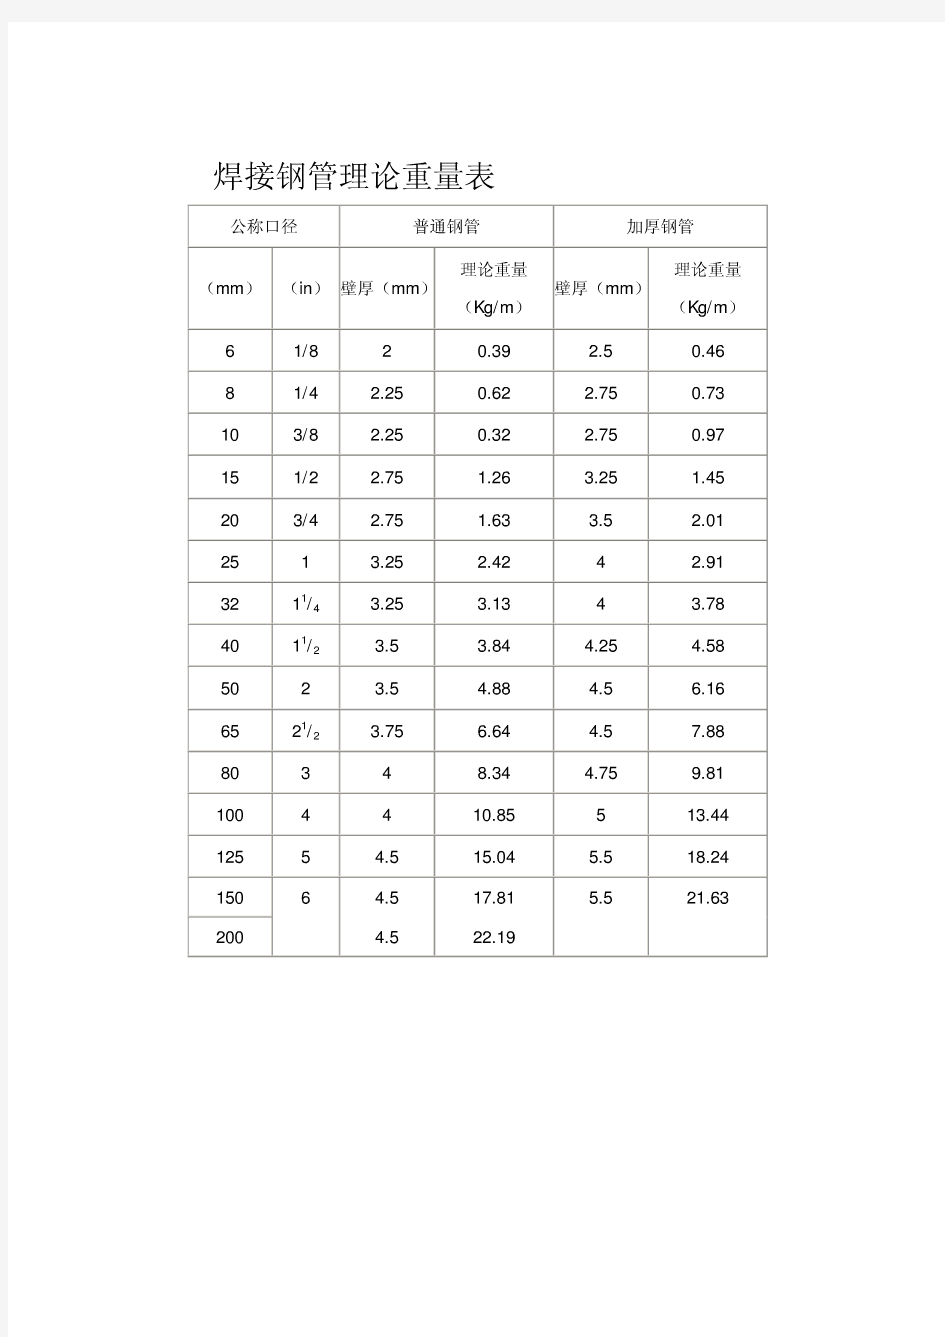 焊接钢管理论重量表-焊接管重量表